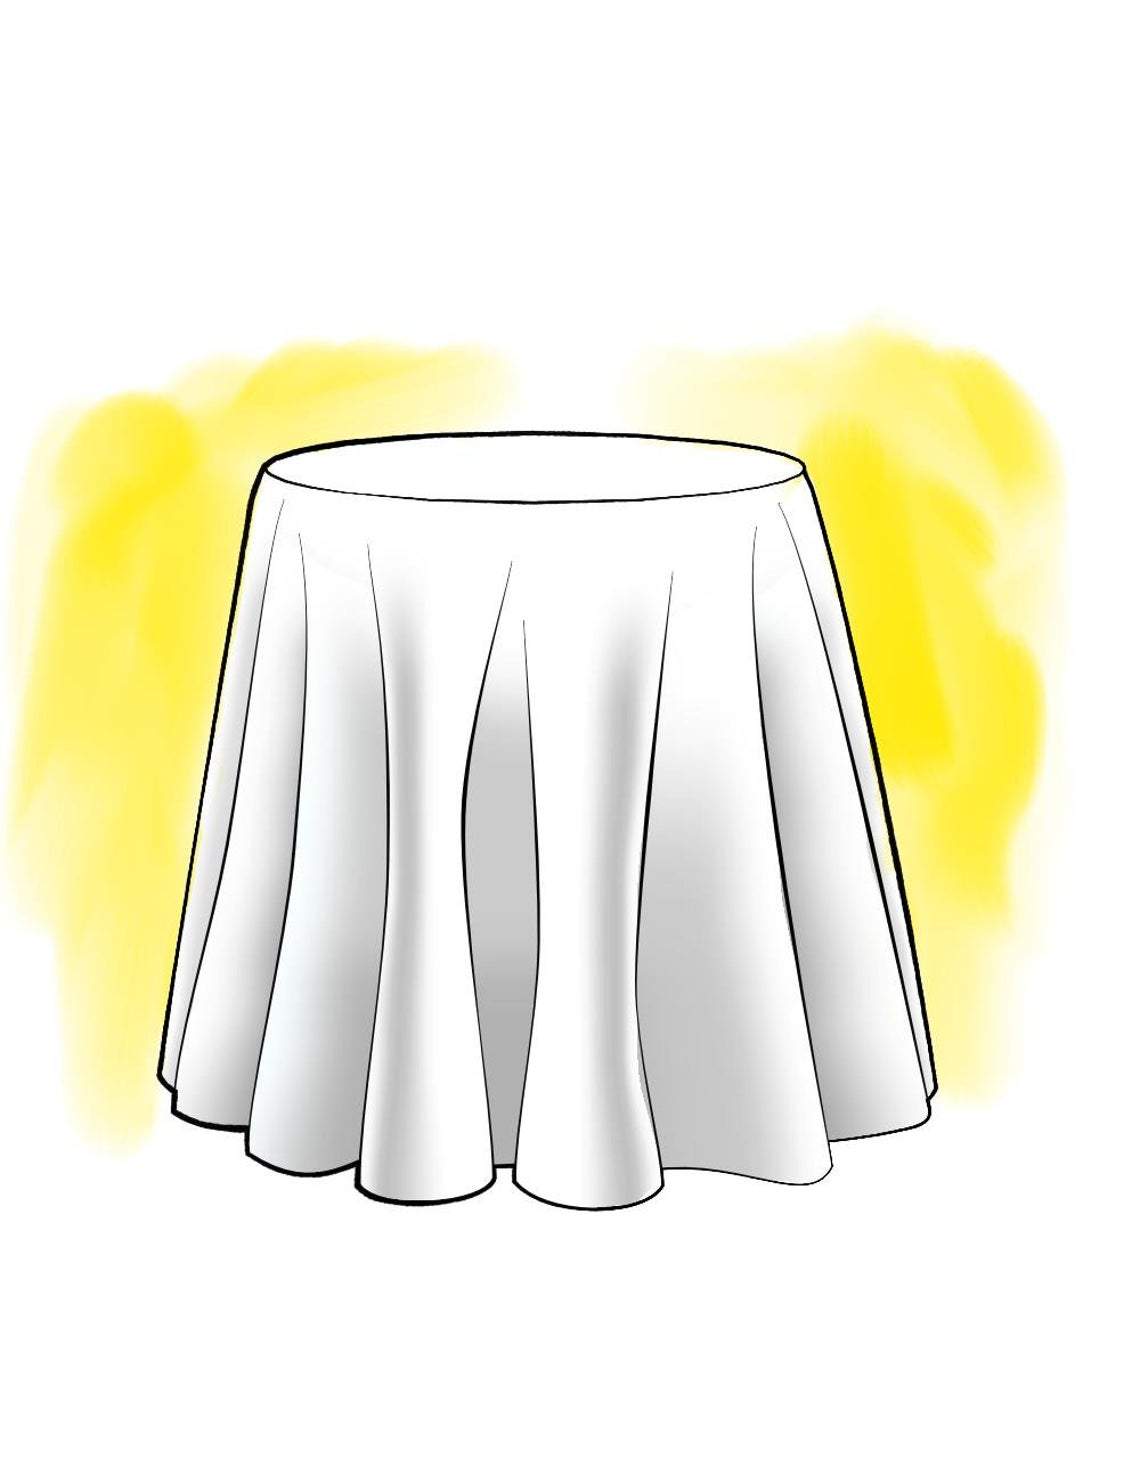 round tablecloth in polo jungle green stripe on cream